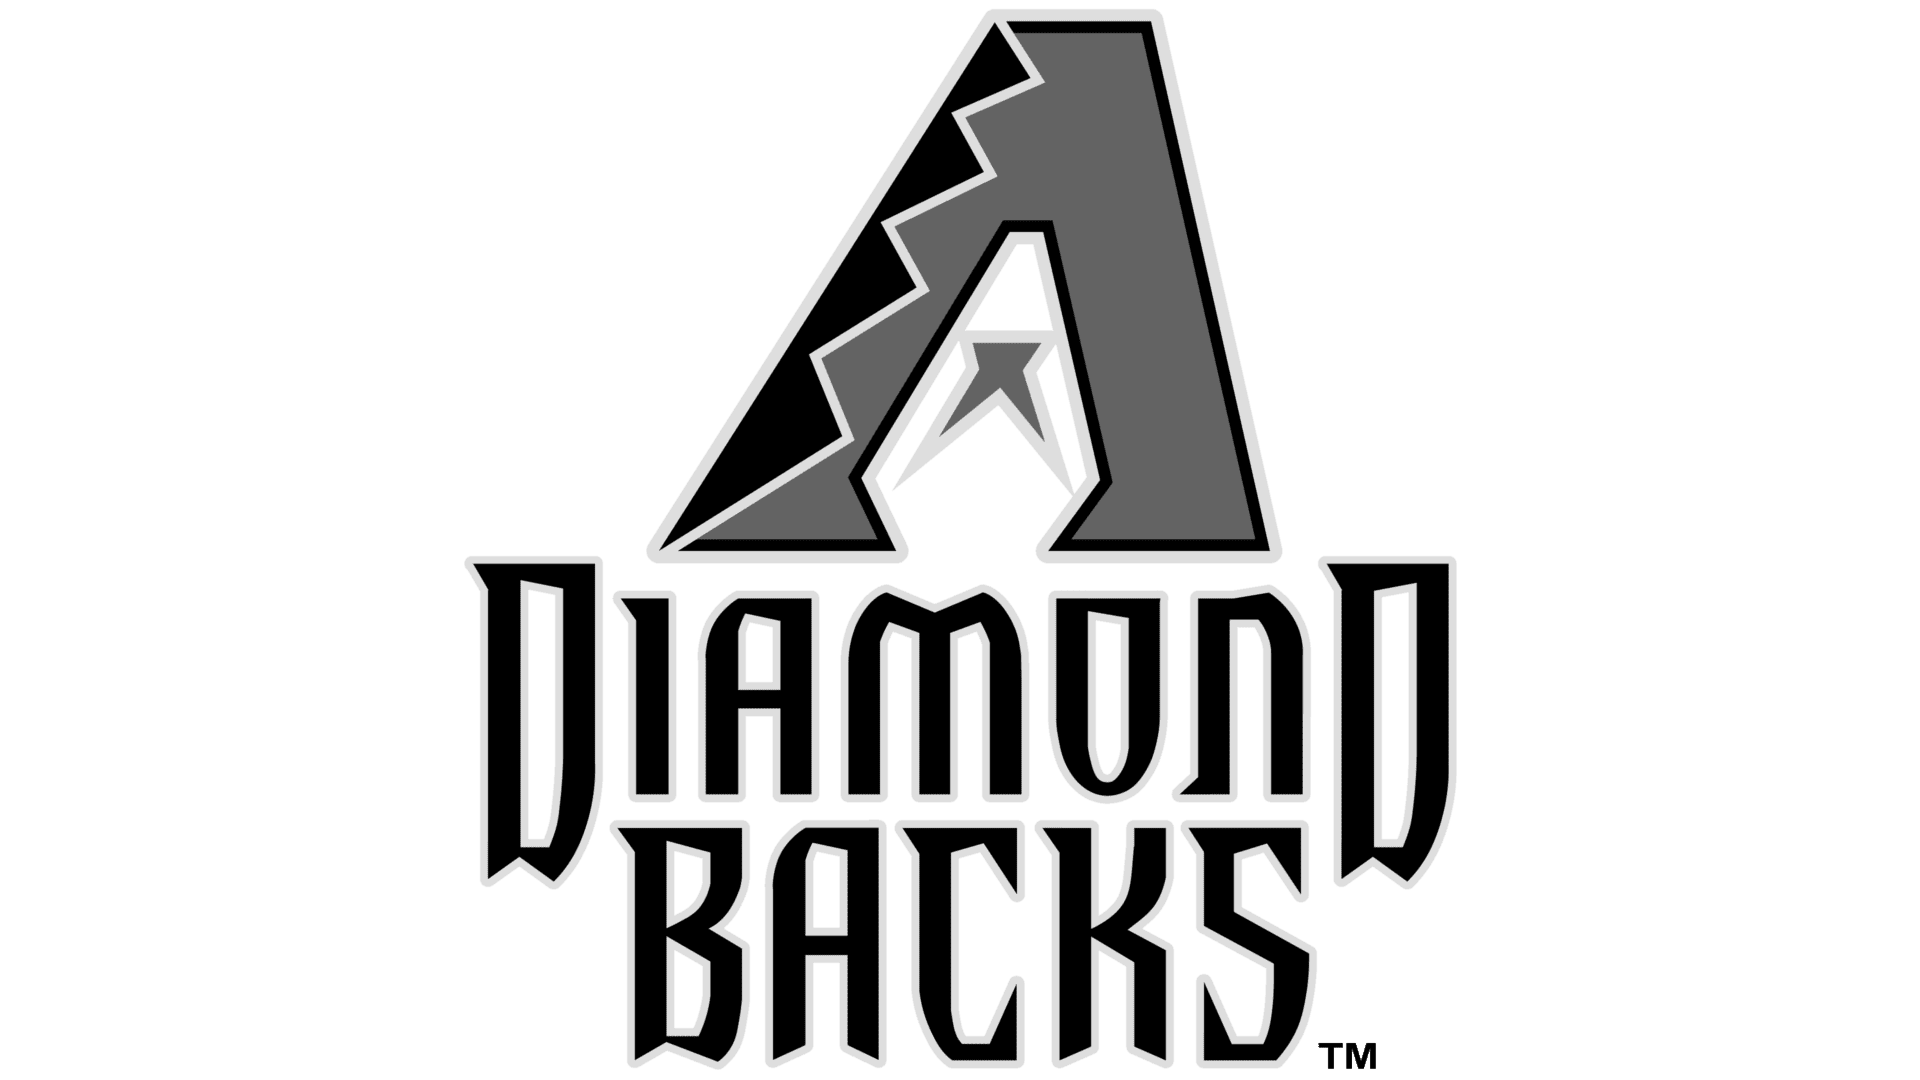 Diamond Backs - Event Parking Space Management